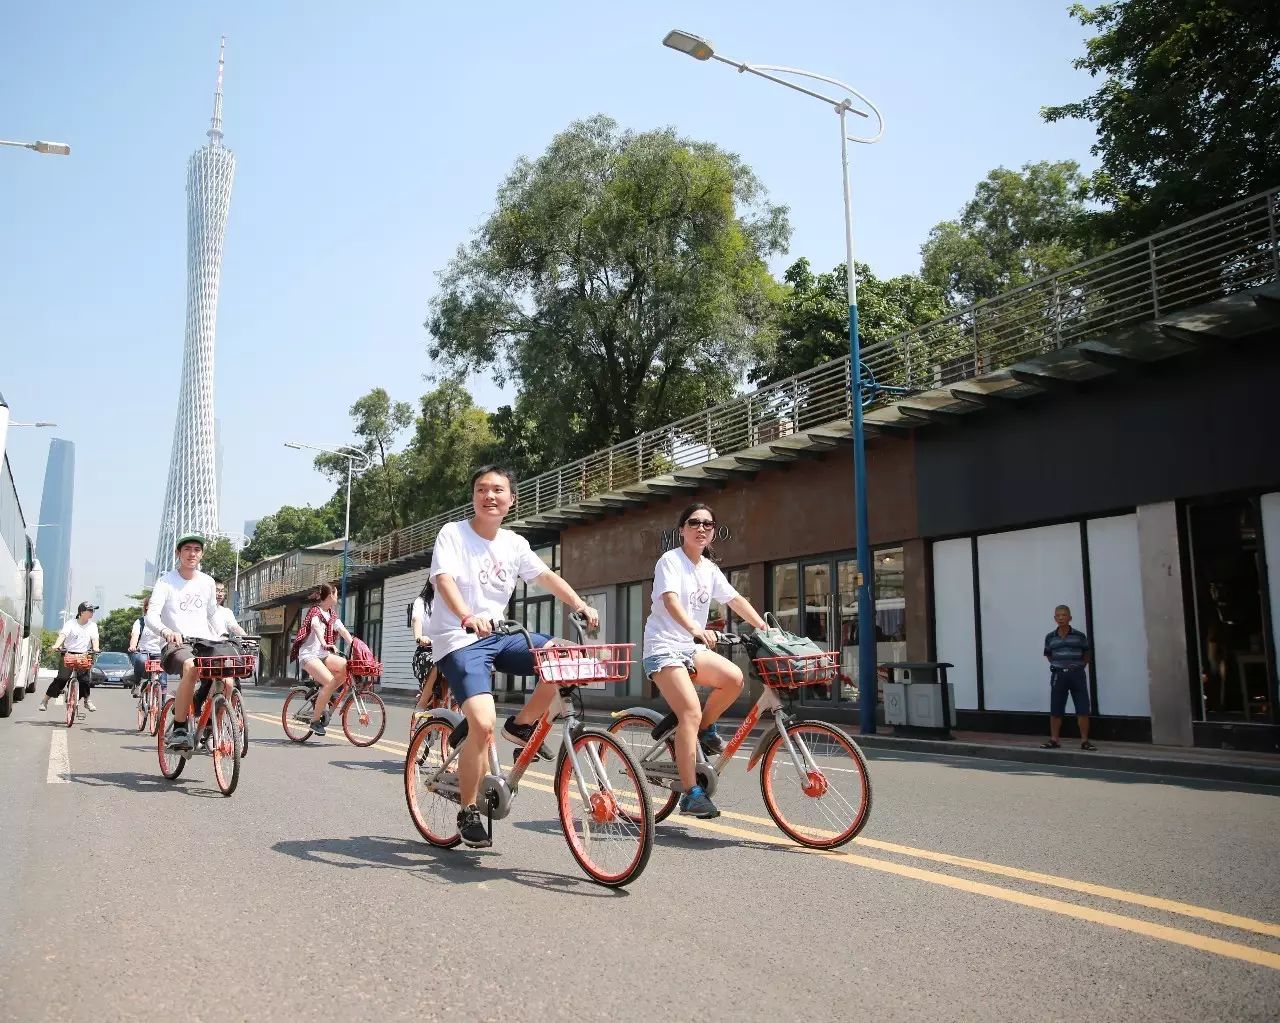 厂家直销上海永久26寸男女式轻便单车载人自行车城市通勒代步单车-阿里巴巴